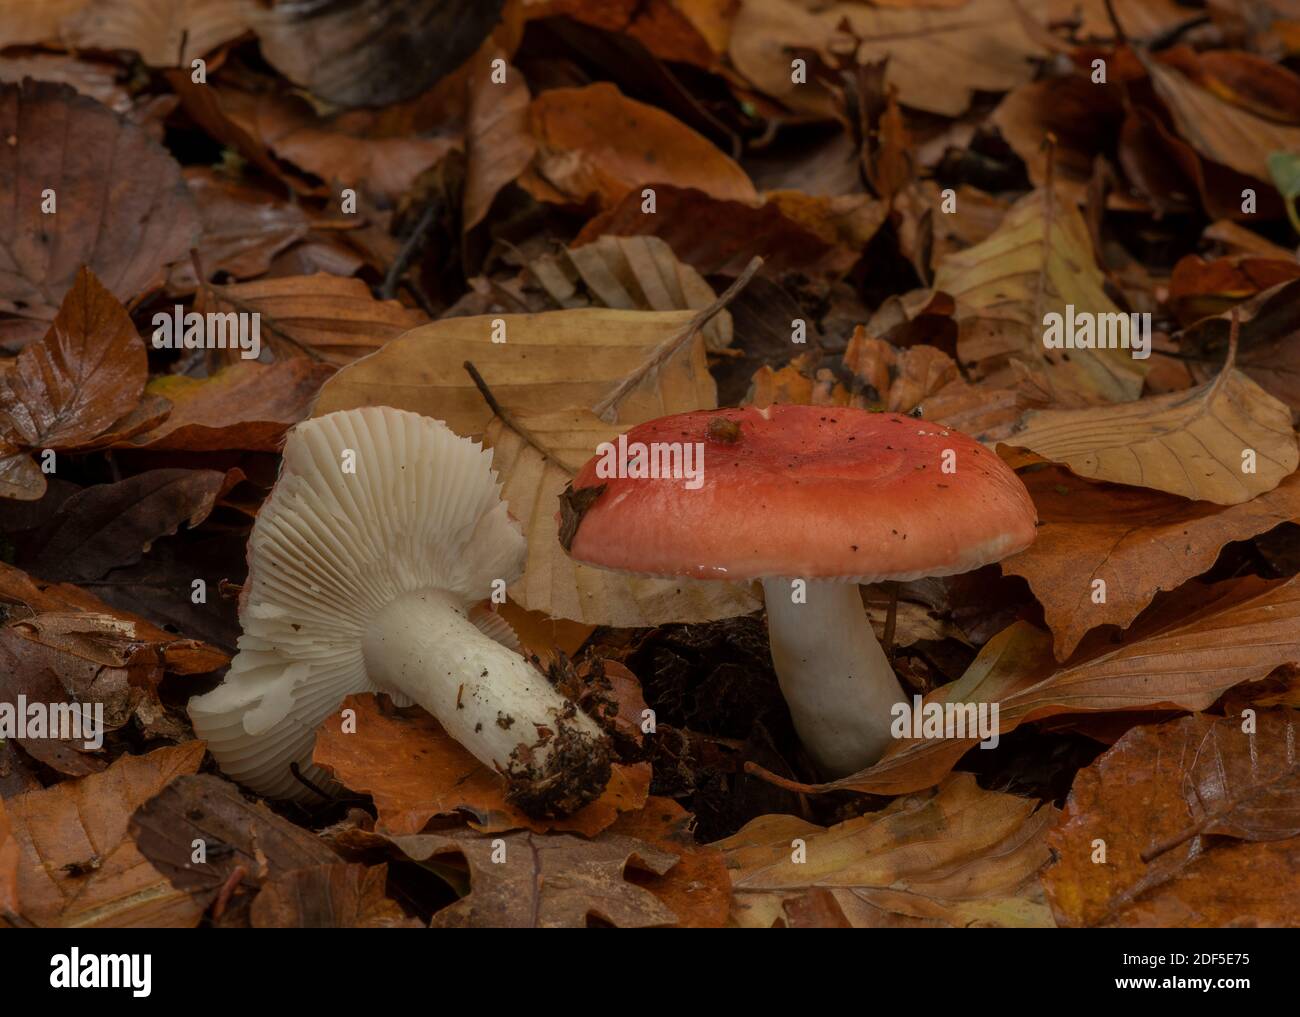 Falce di legno di faggio, Russula nobilis, funghi tra le lettiere di foglie in vecchio legno di faggio, New Forest. Foto Stock